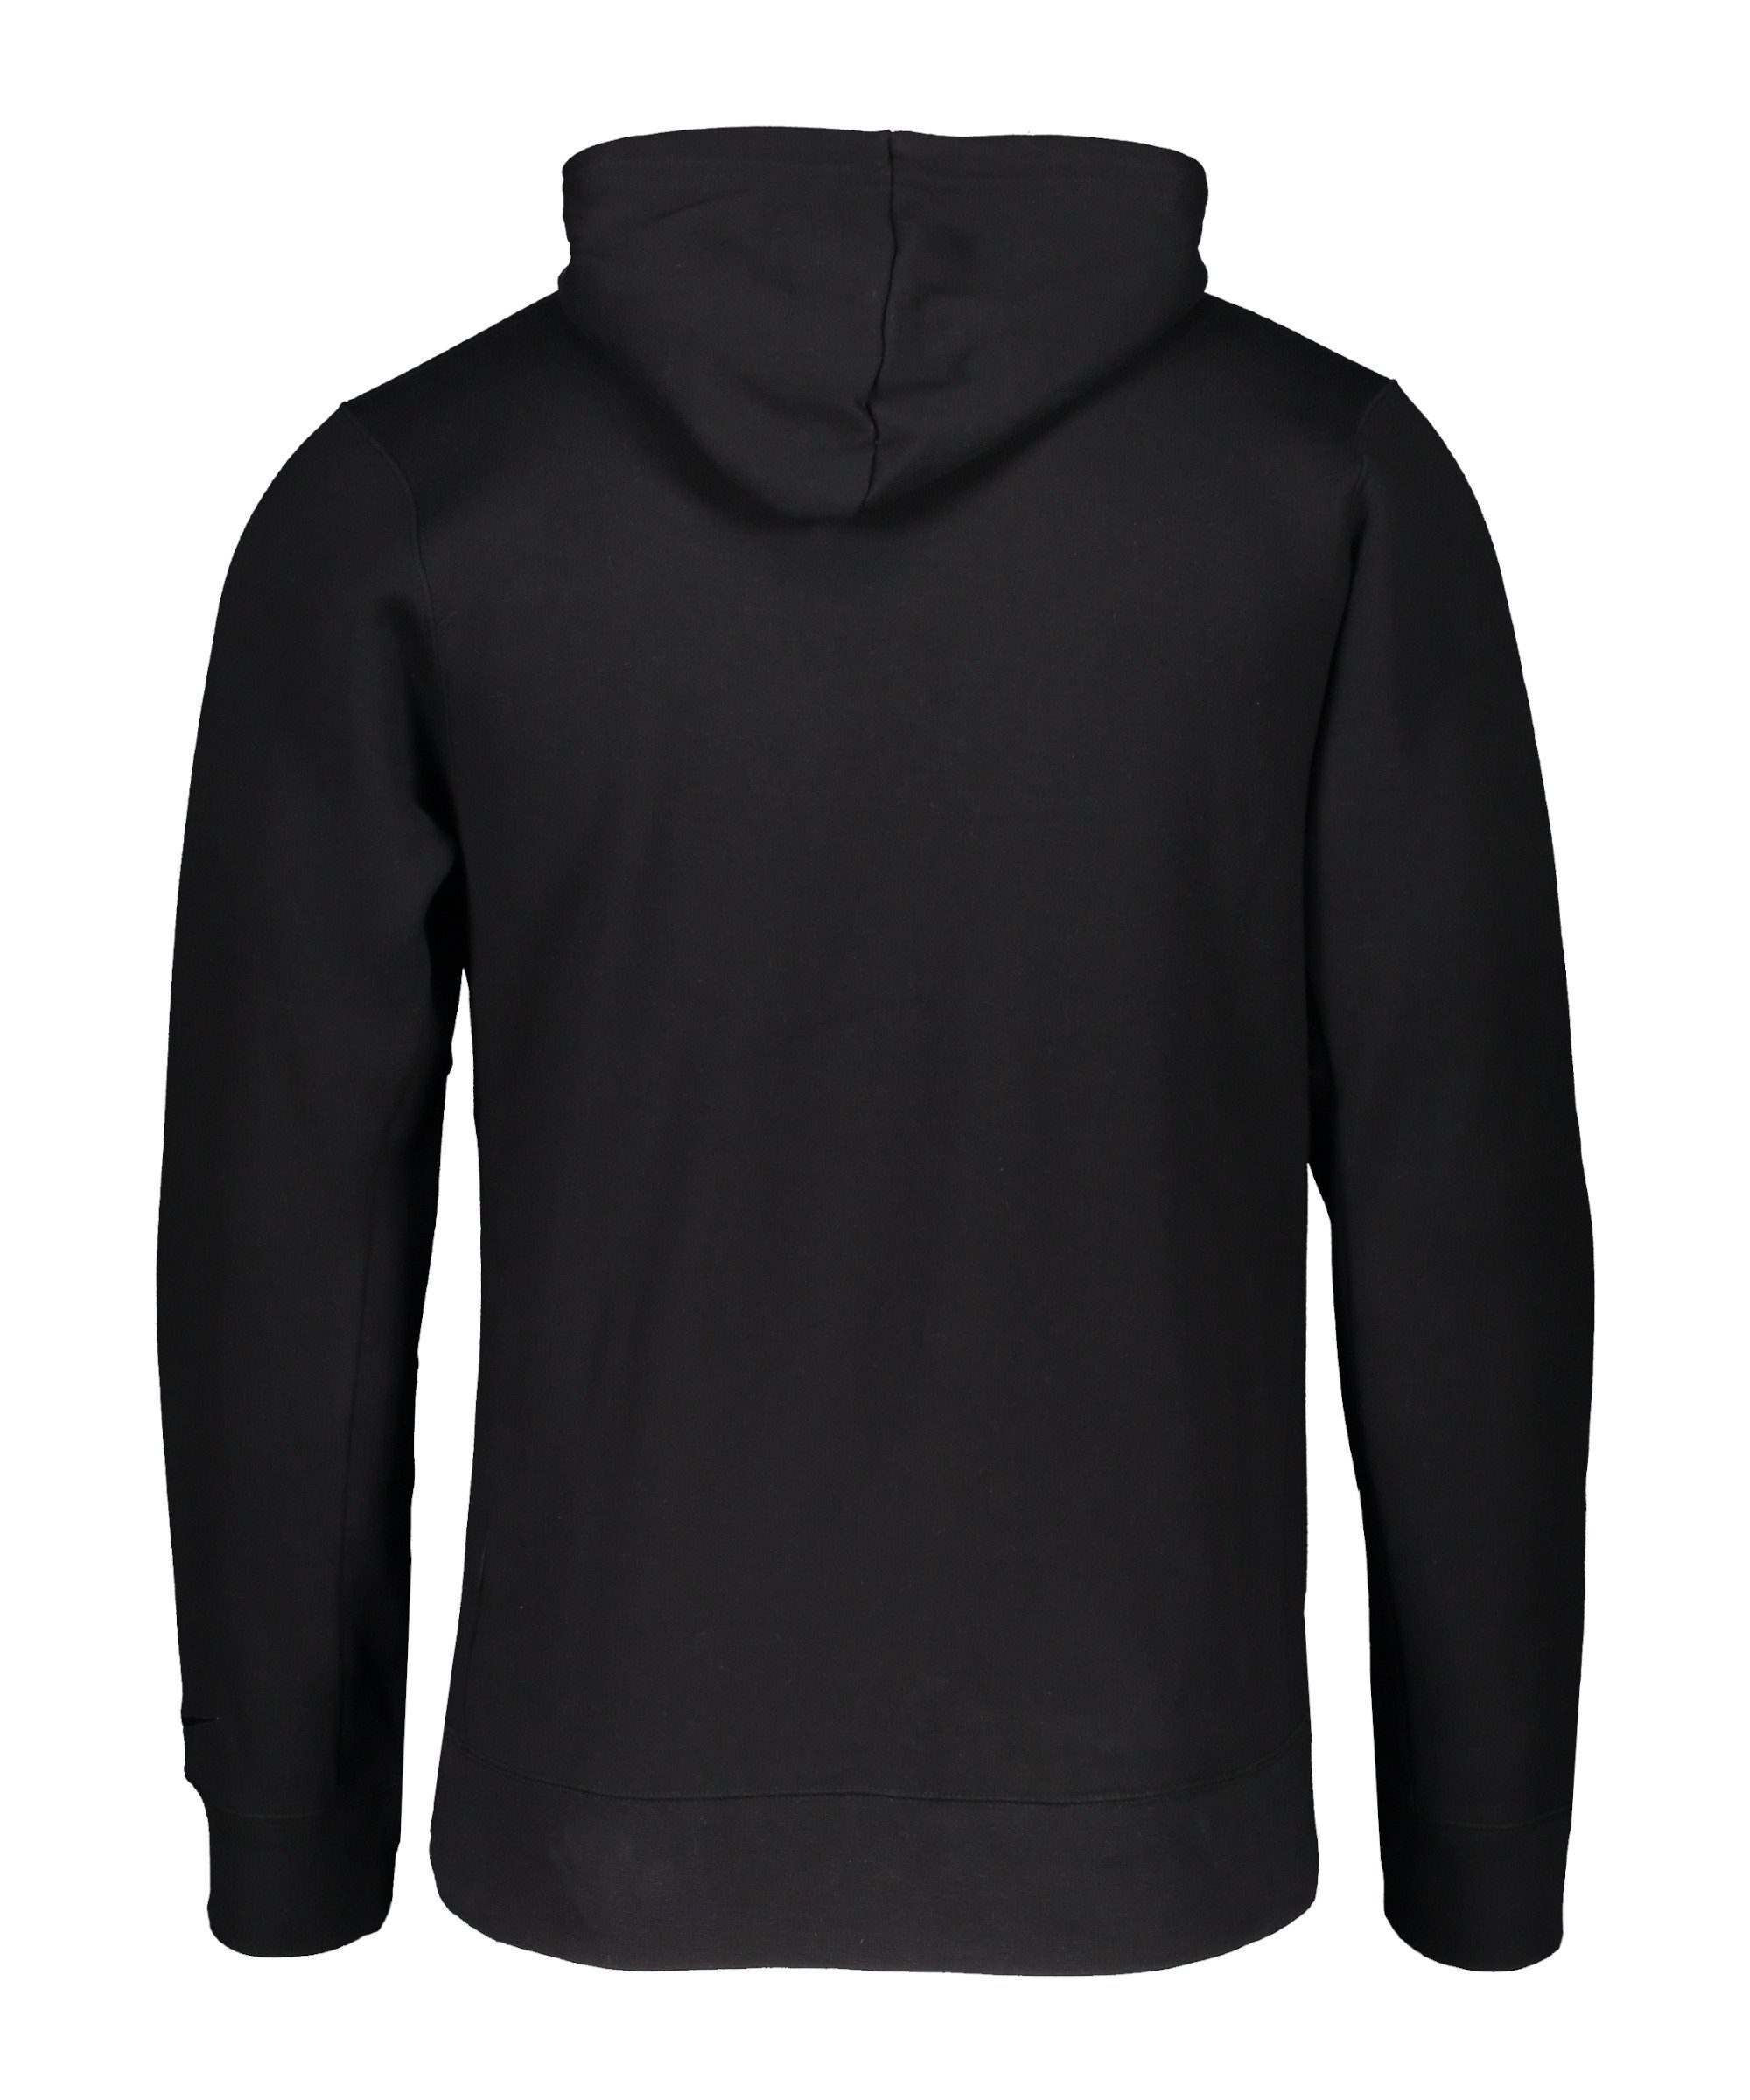 Hoody schwarz Fleece Sportswear F.C. Sweatshirt Nike